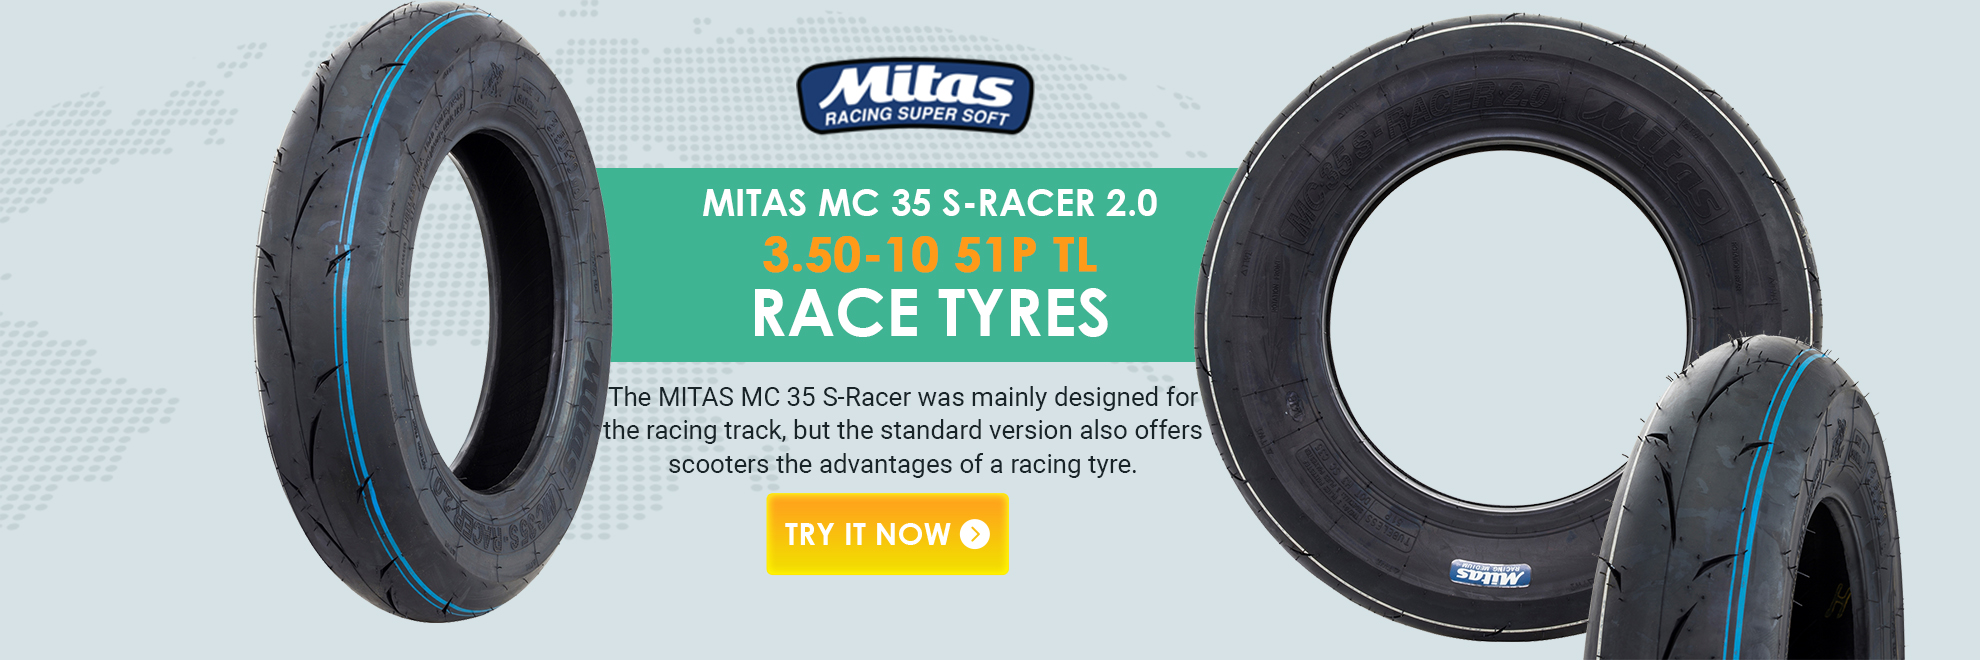 Mitas MC35 S-Racer 2.0 51P TL 3.50-10 MEDIUM